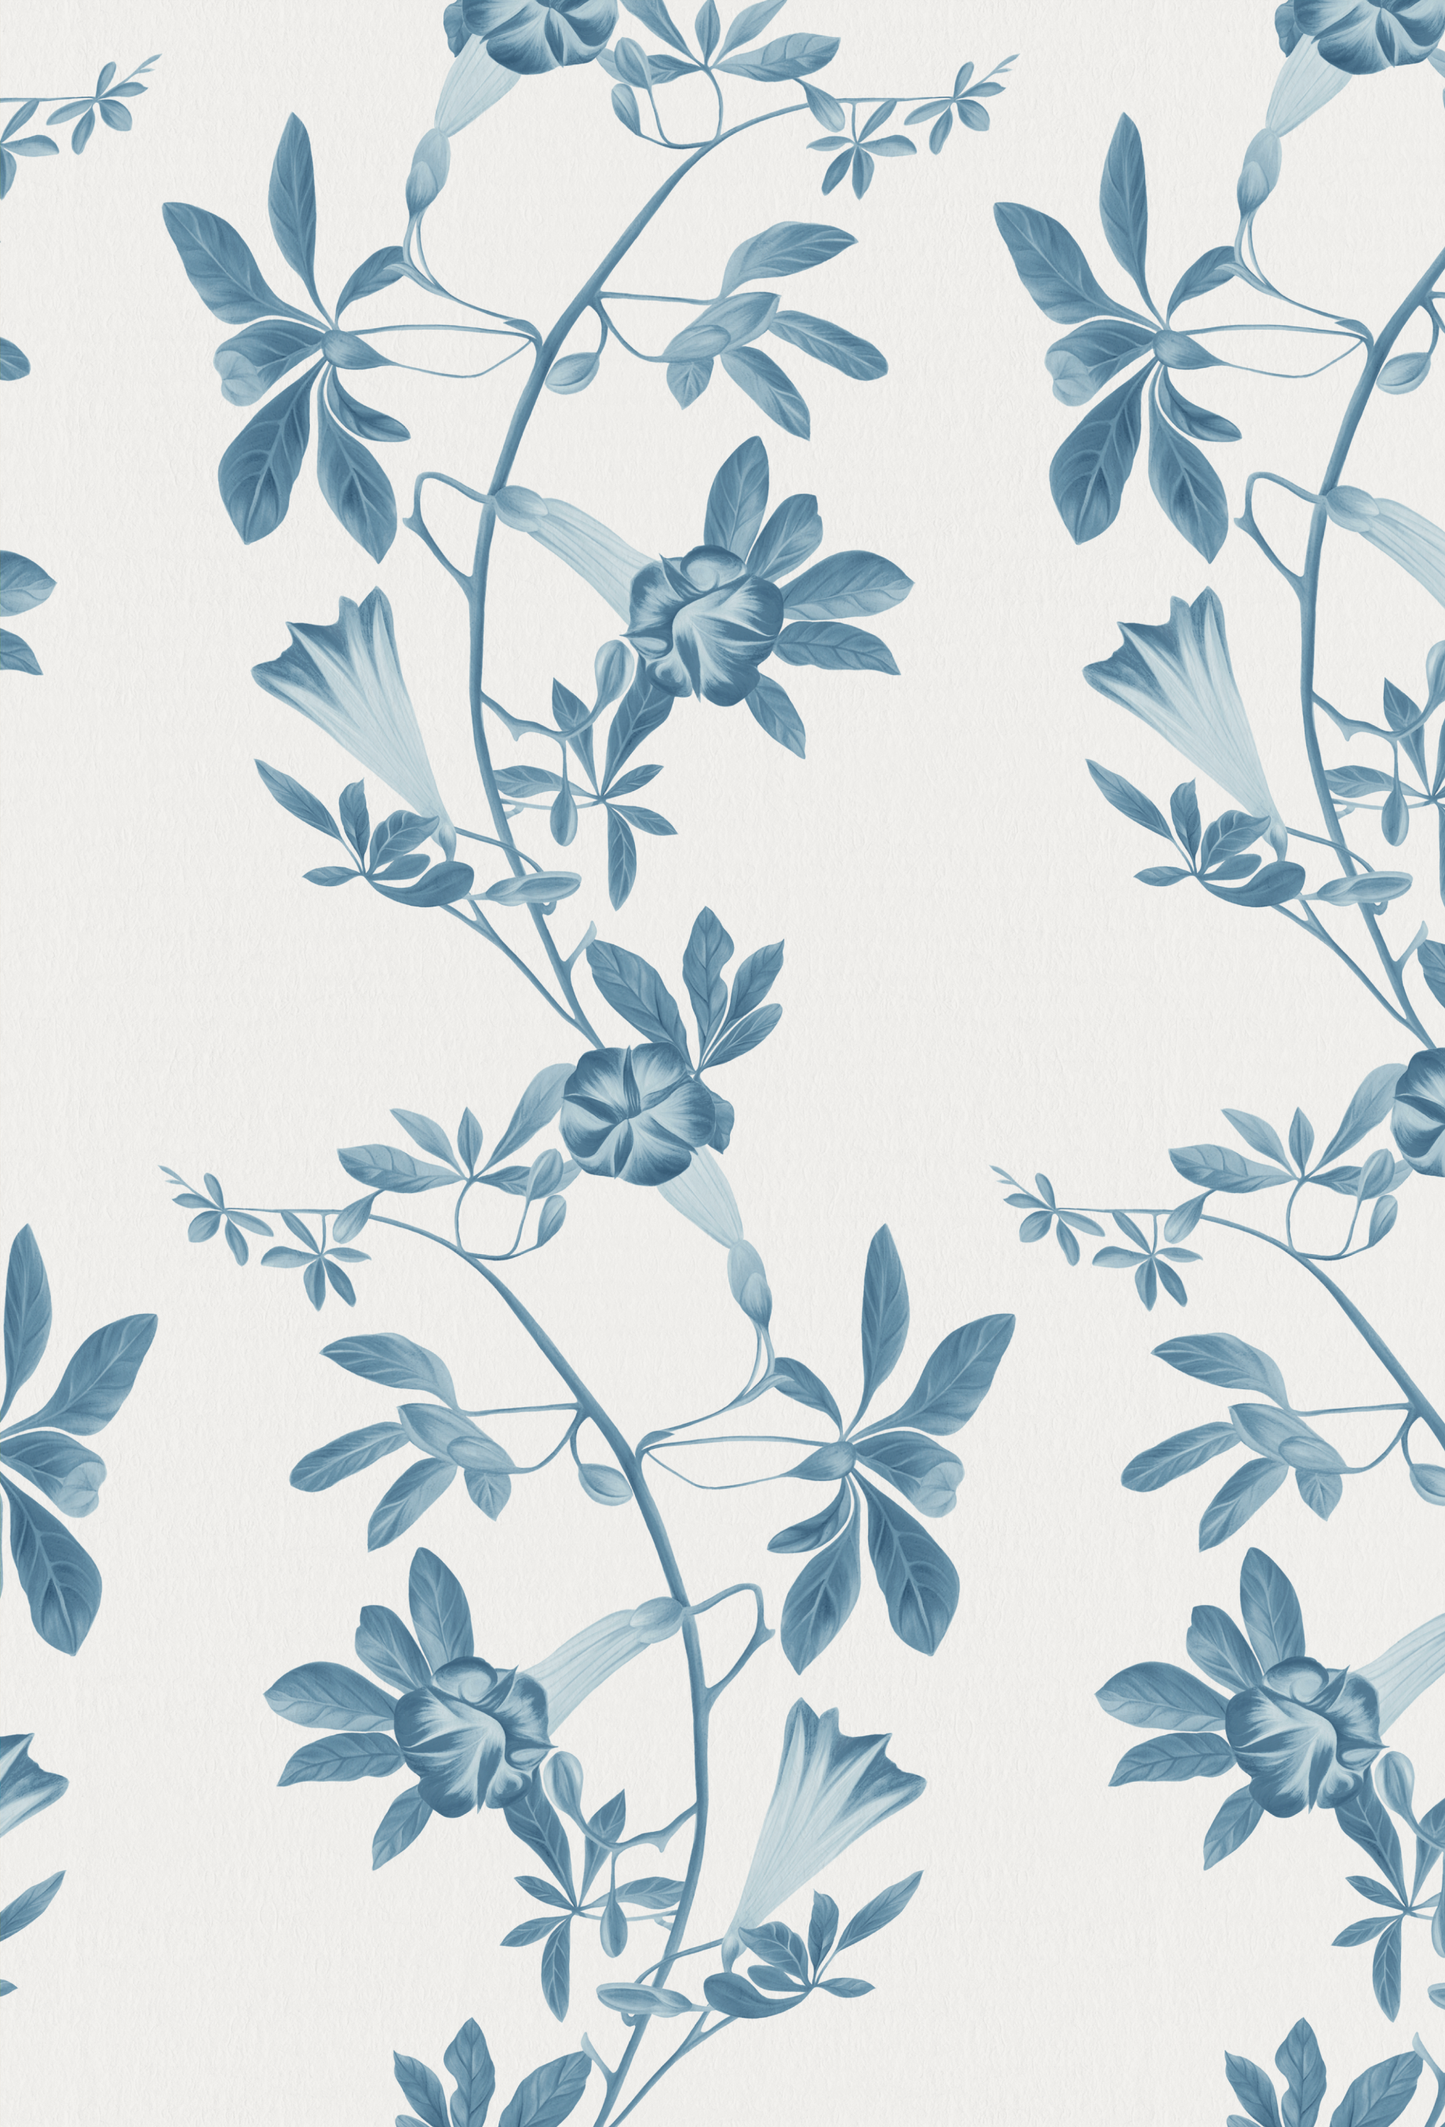 The midsummer in Iris designer wallpaper made of blue florals in a toile vine by Deus ex Gardenia.